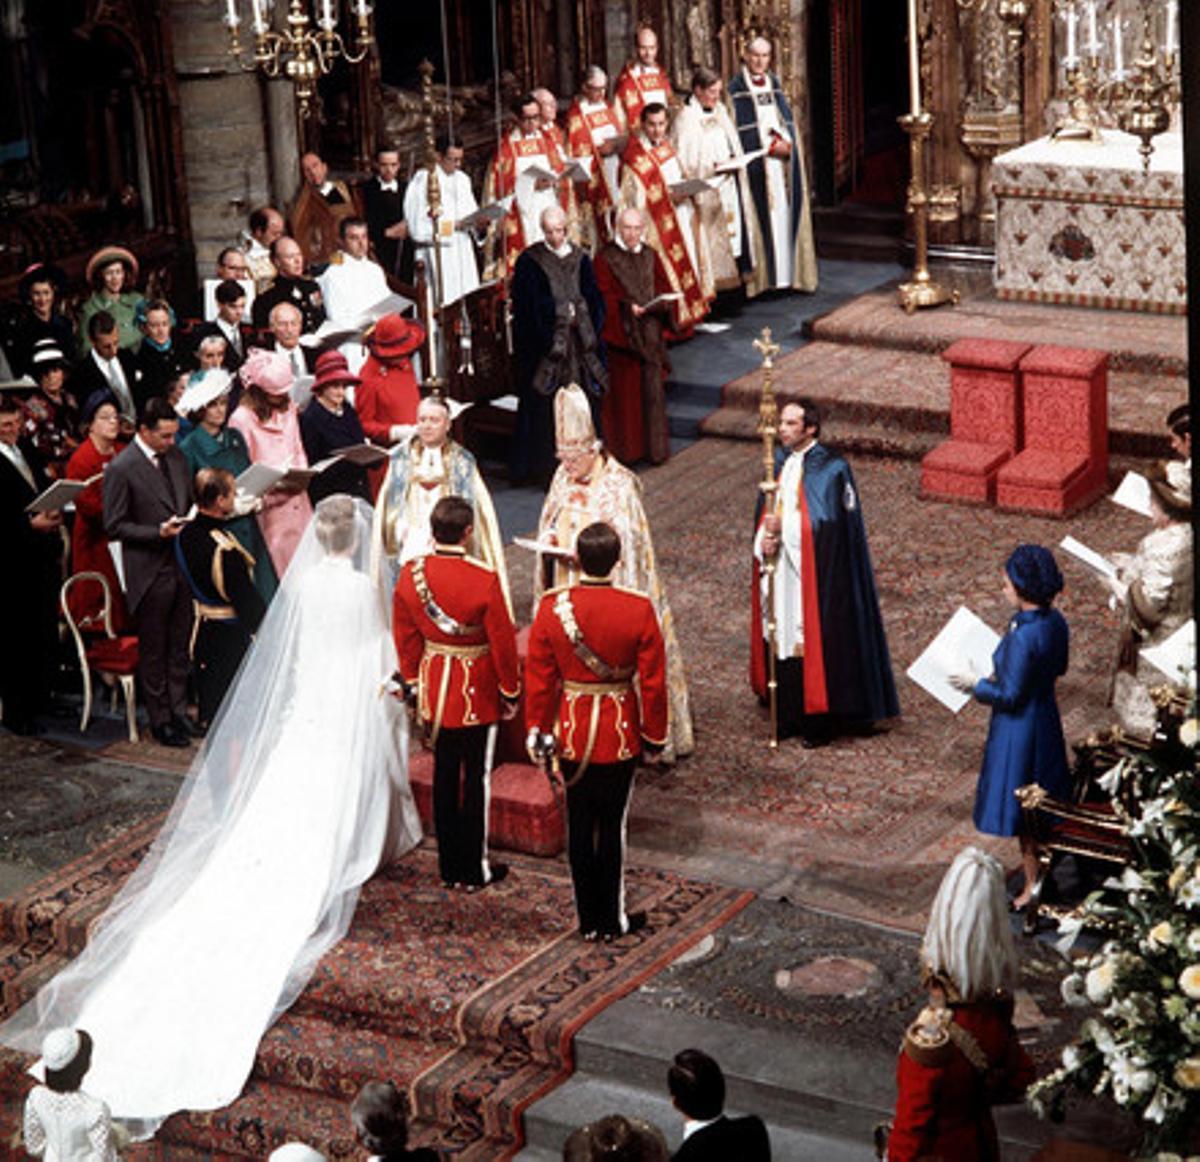 Boda de la princesa Ana y Mark Philips, en la abadía de Westminster, en 1973.